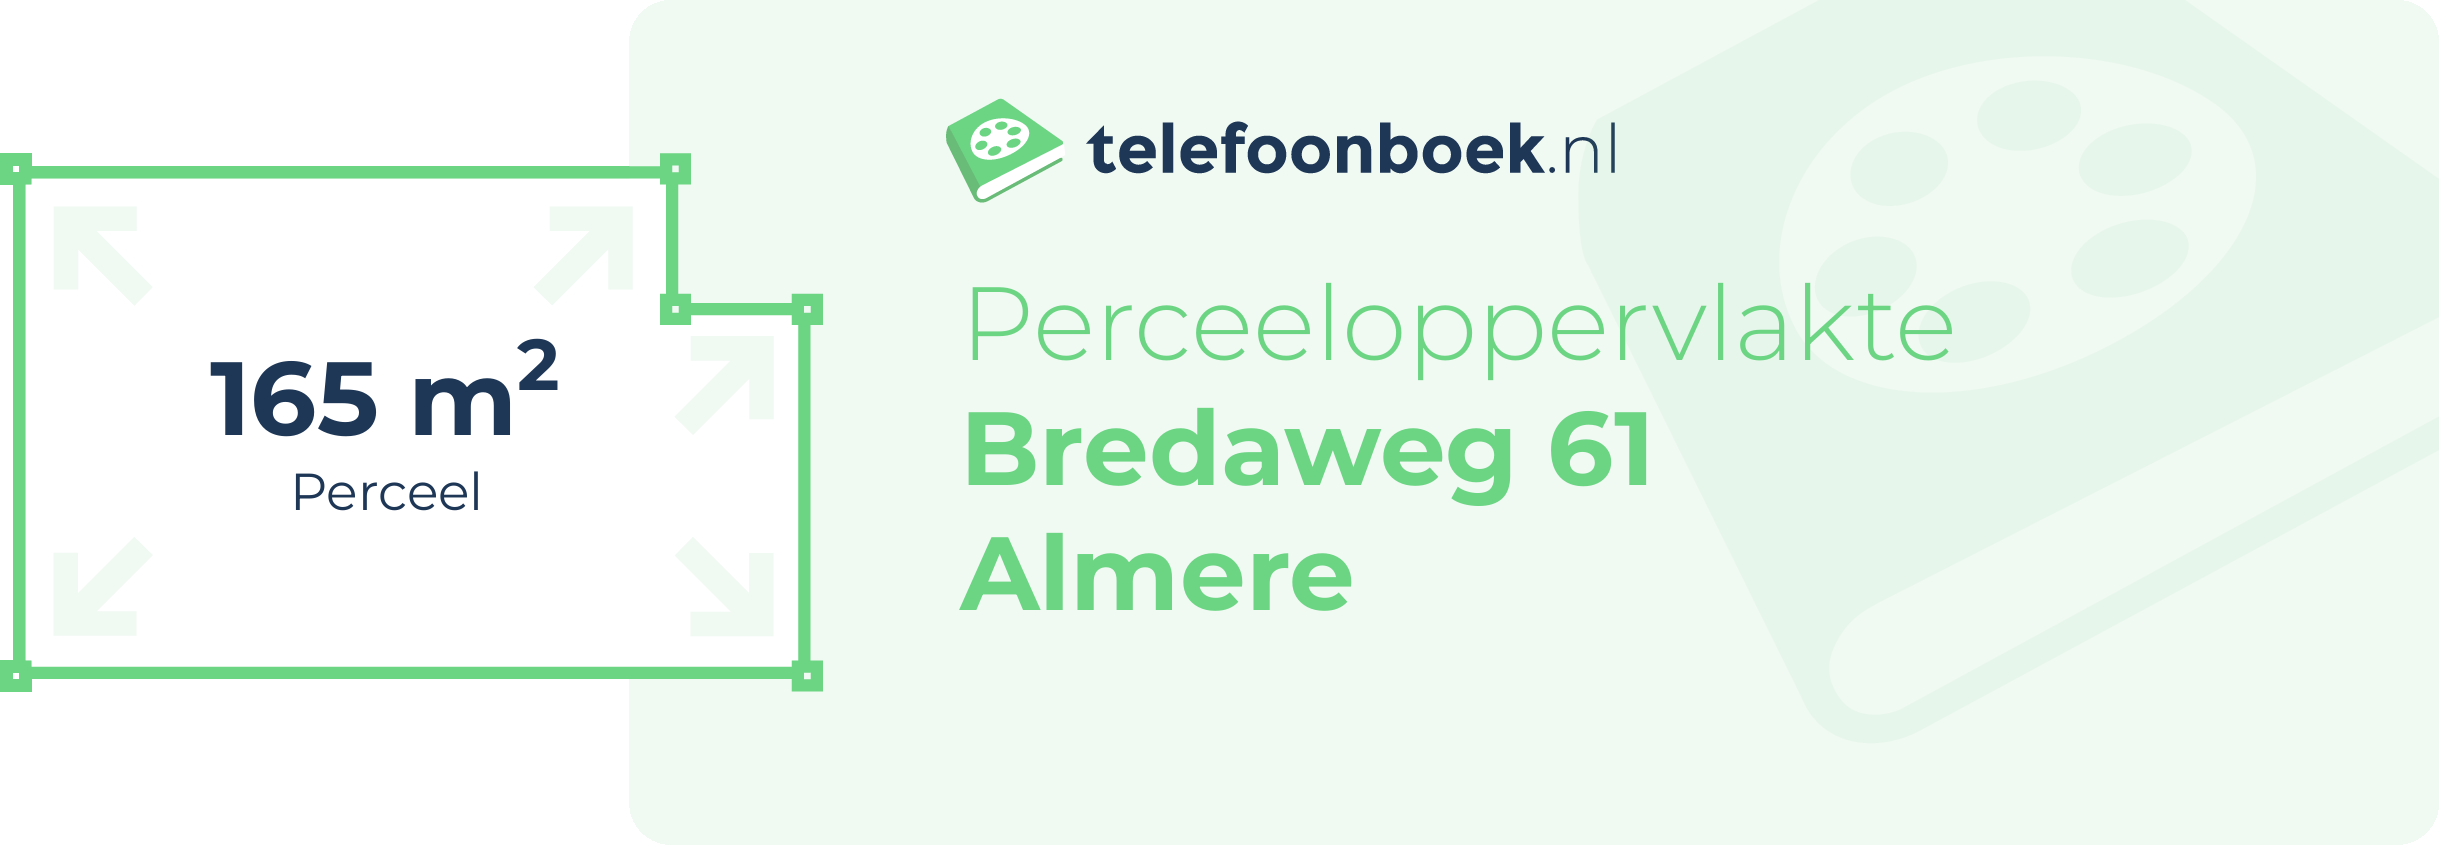 Perceeloppervlakte Bredaweg 61 Almere